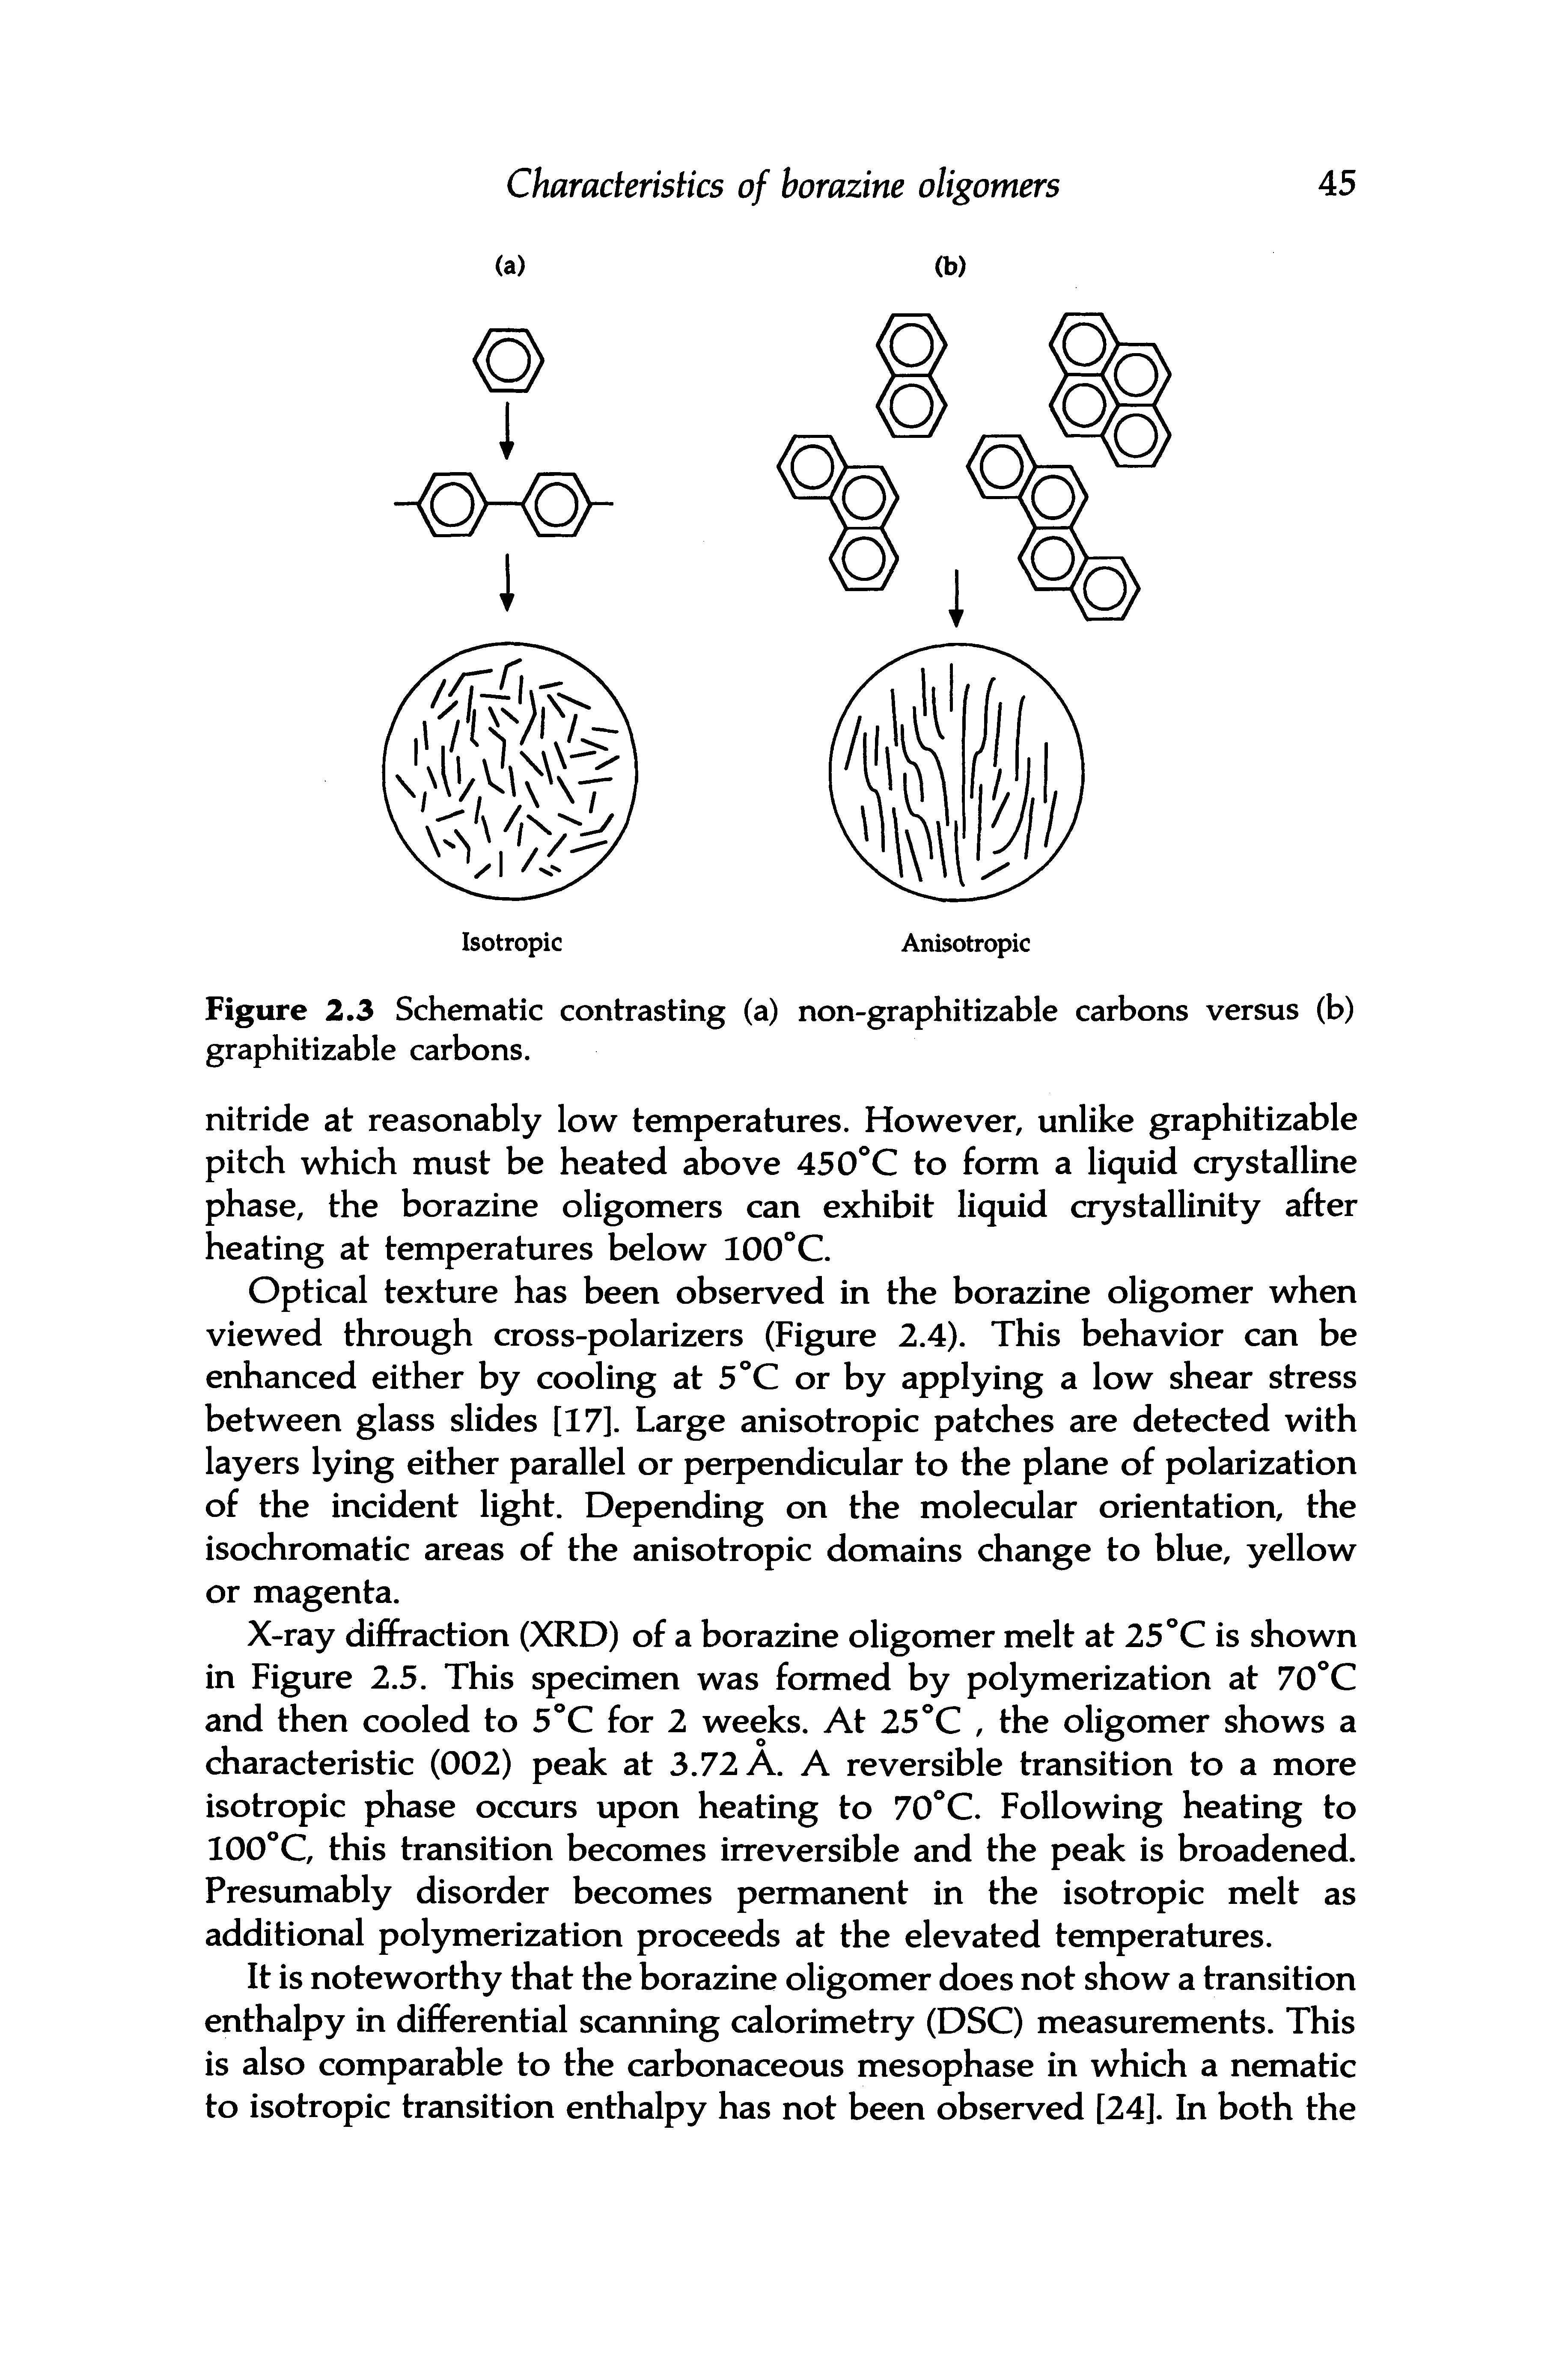 Figure 2.3 Schematic contrasting (a) non-graphitizable carbons versus (b) graphitizable carbons.